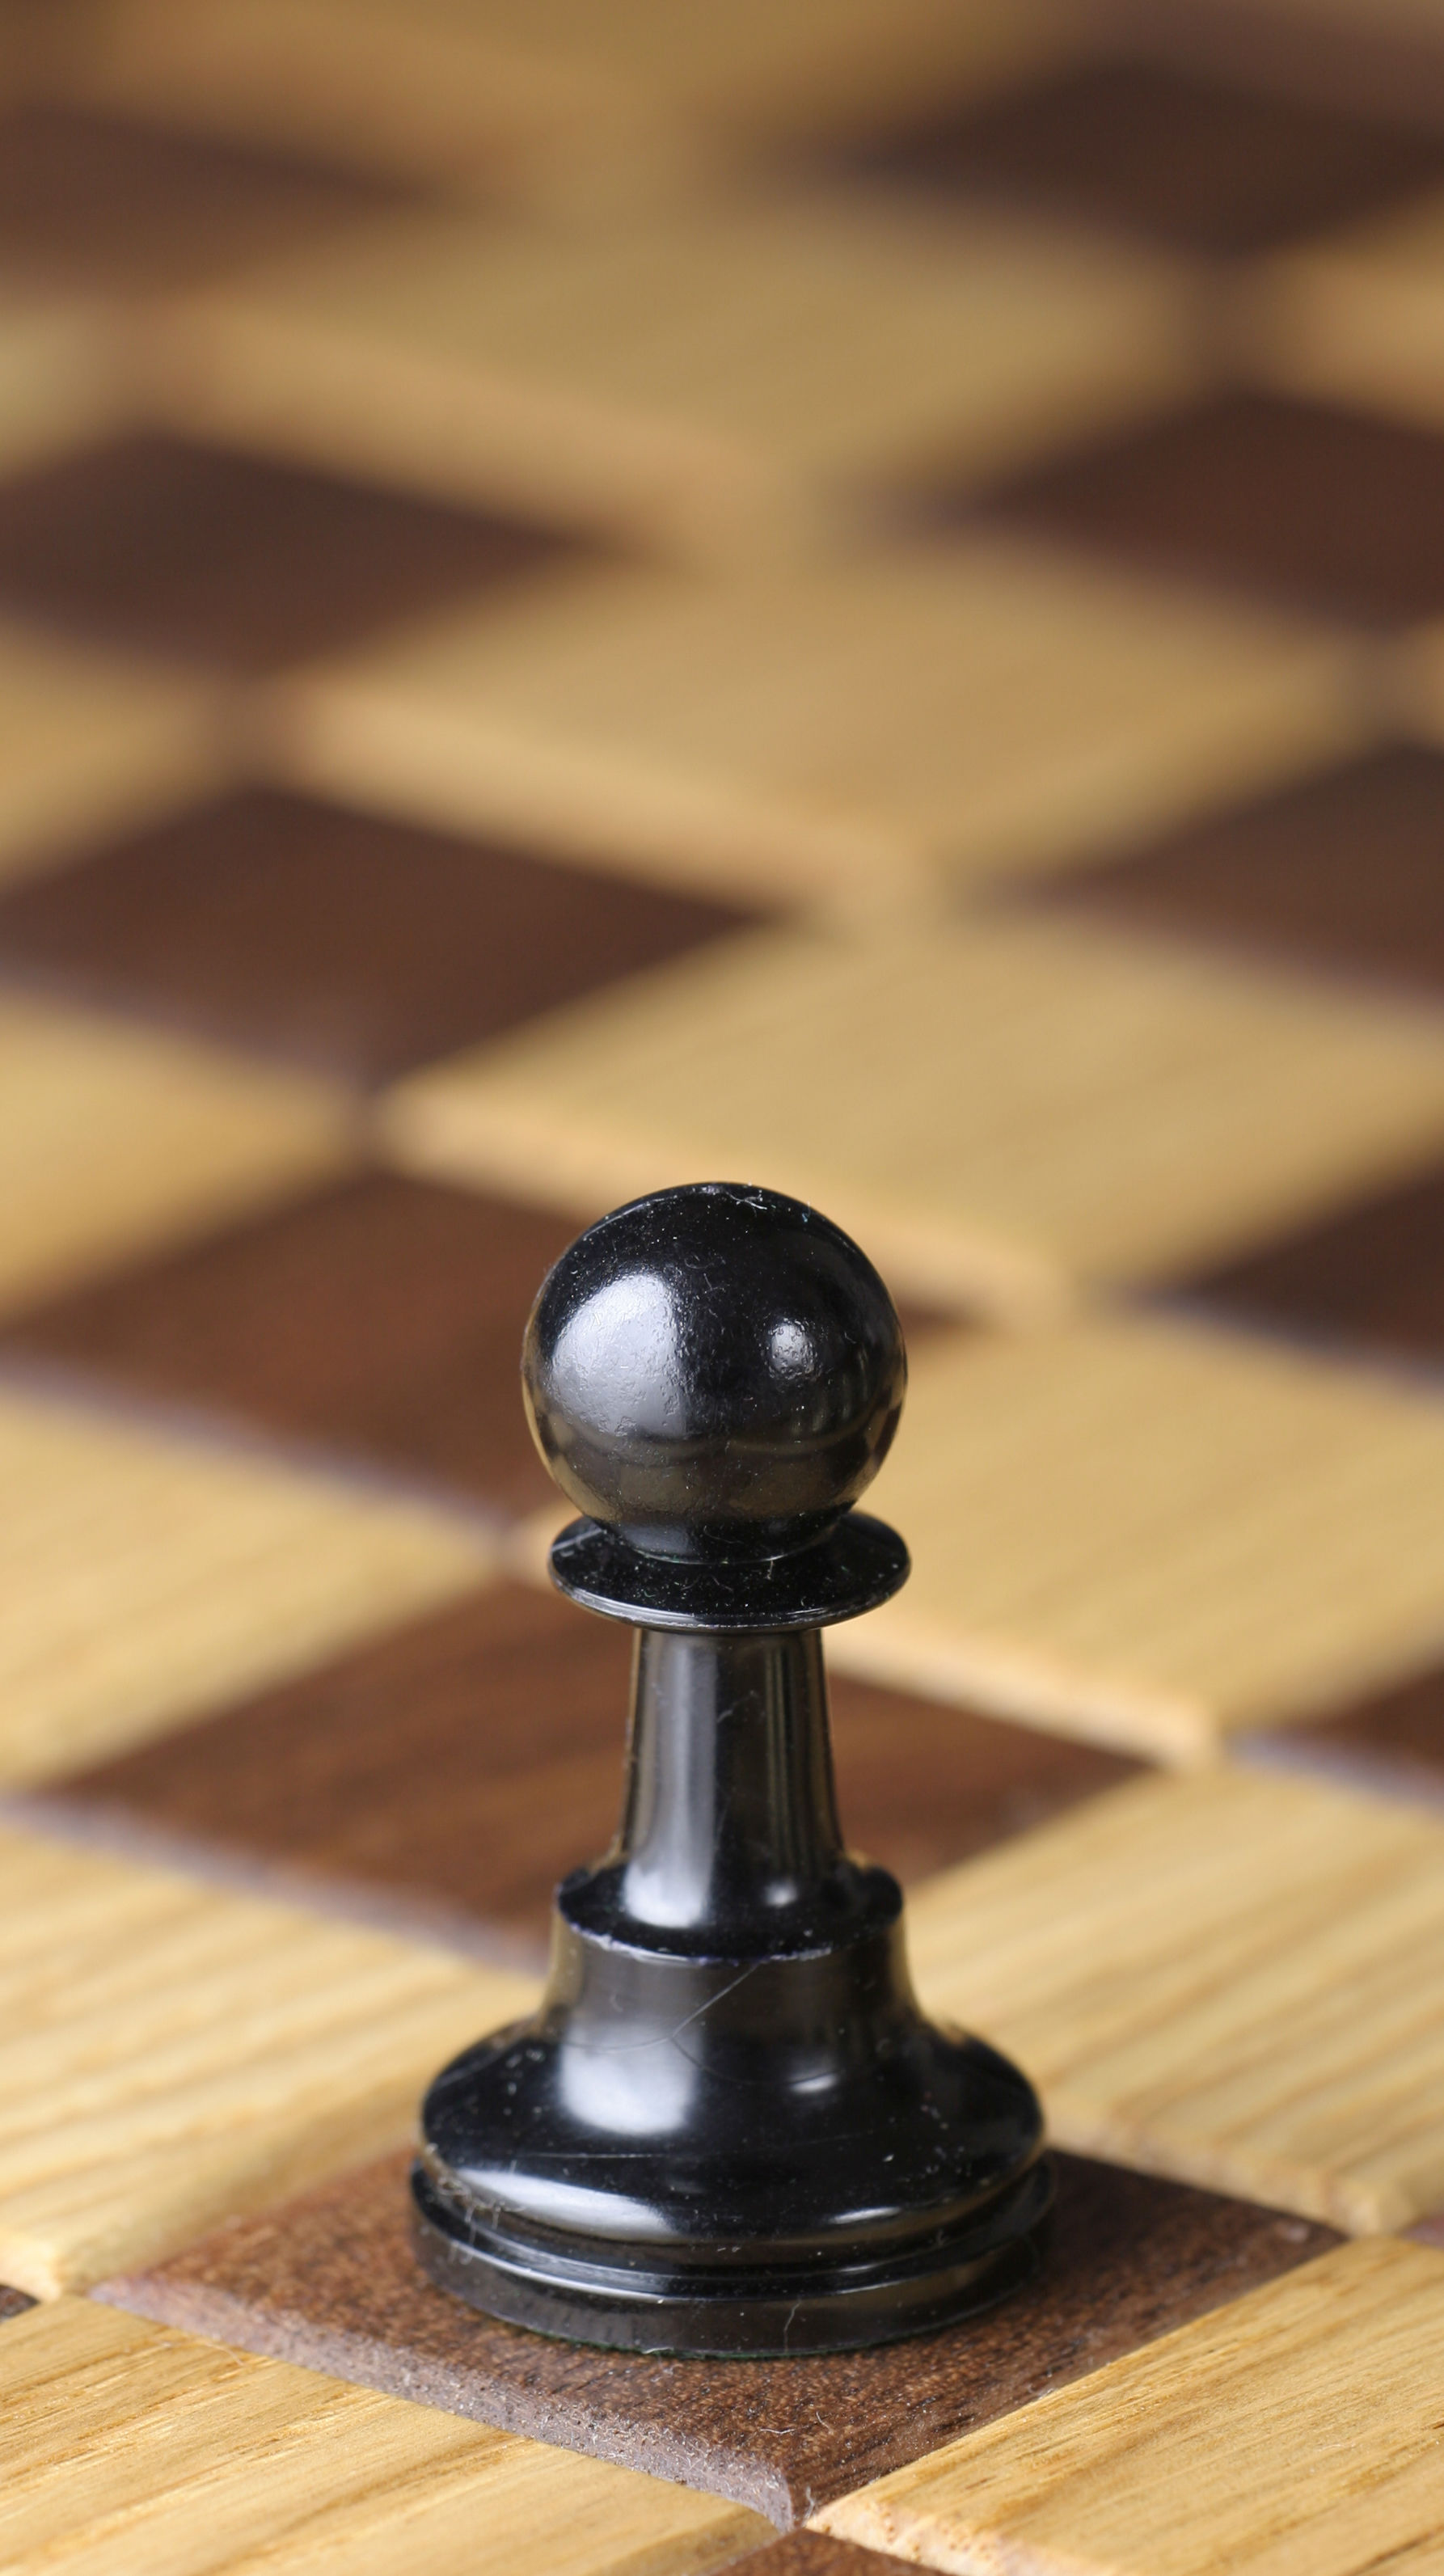 XSWZAQ Juego de ajedrez cuadrado: un tablero de ajedrez que mueve las  piezas de ajedrez de